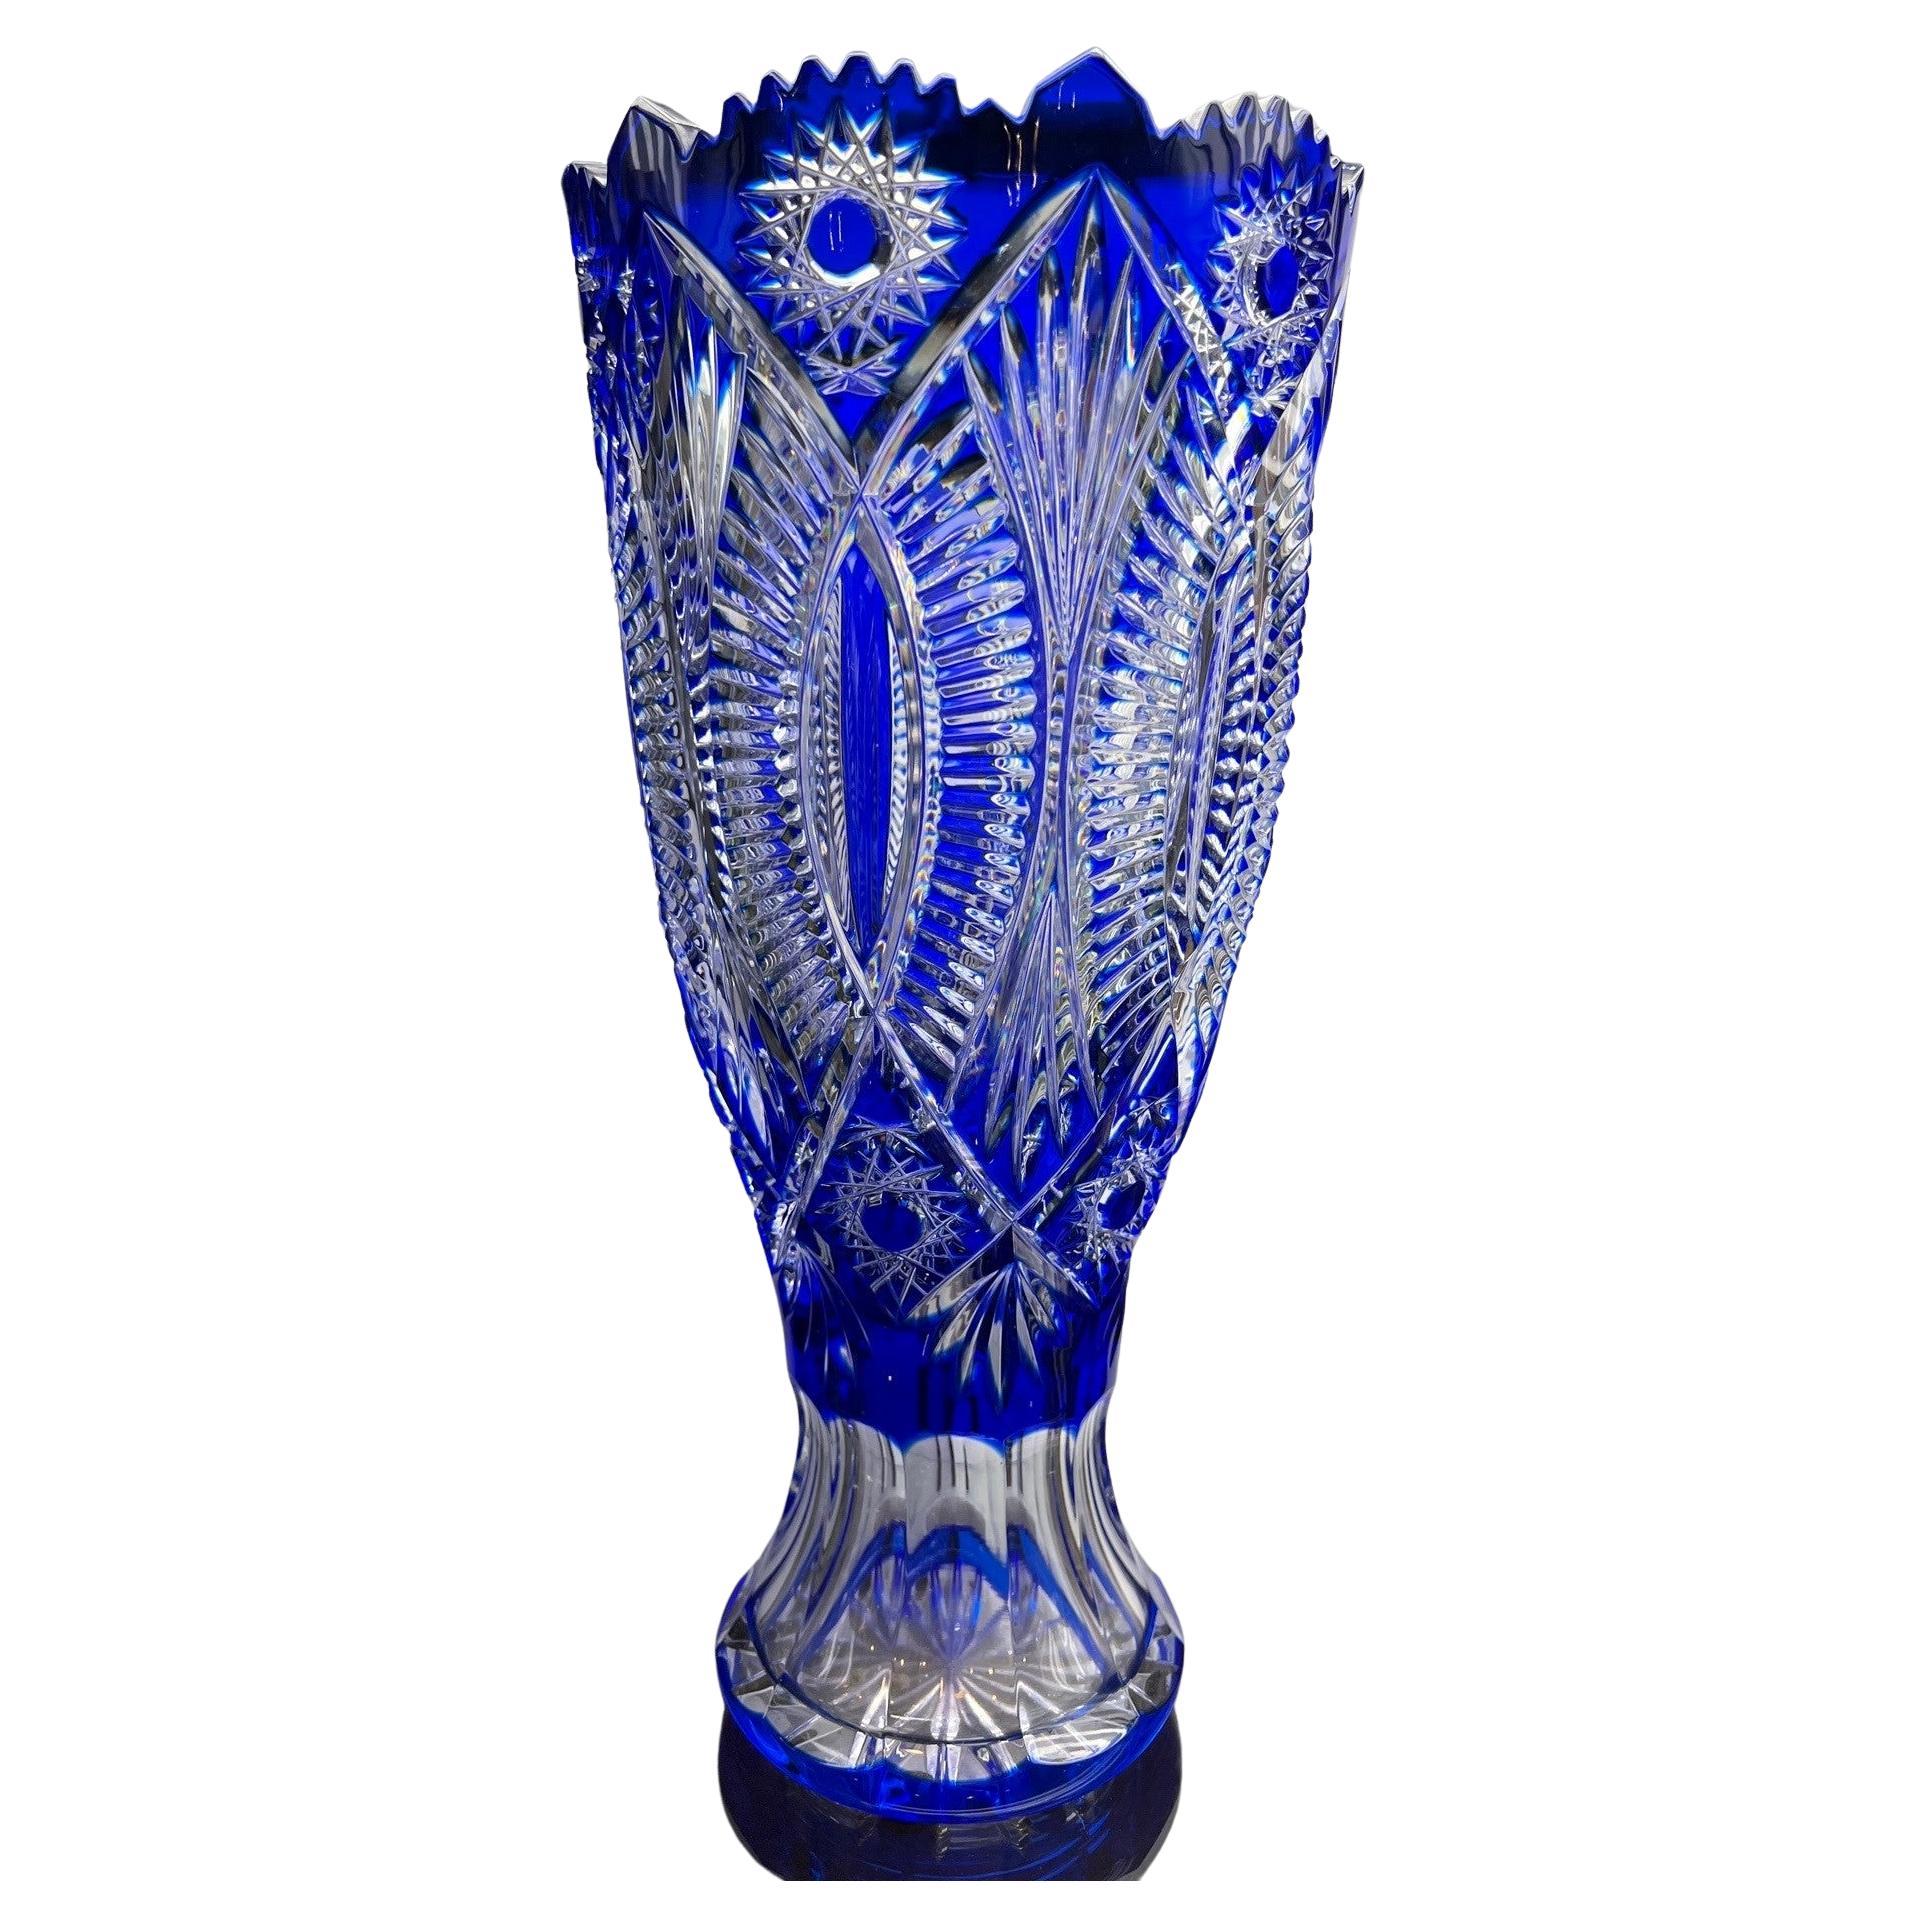  Kobaltblaue Vase aus handgeschliffenem Bleikristall von Caesar Crystal Bohemiae Co. Tschechisch.  